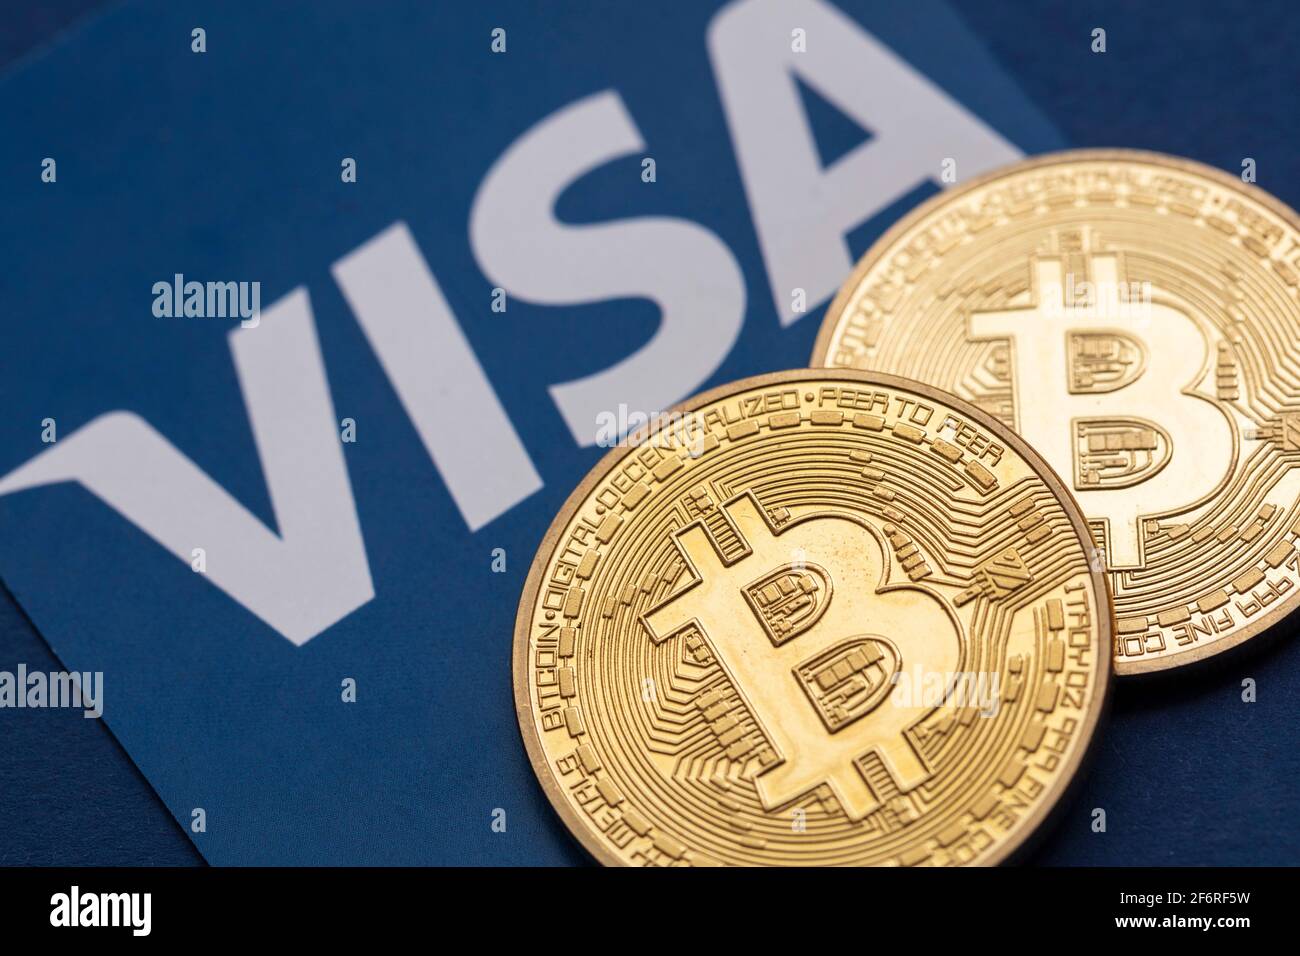 LONDRES, Royaume-Uni - Mars 2021: Bitcoin crypto-monnaie sur le logo du service financier Visa Banque D'Images